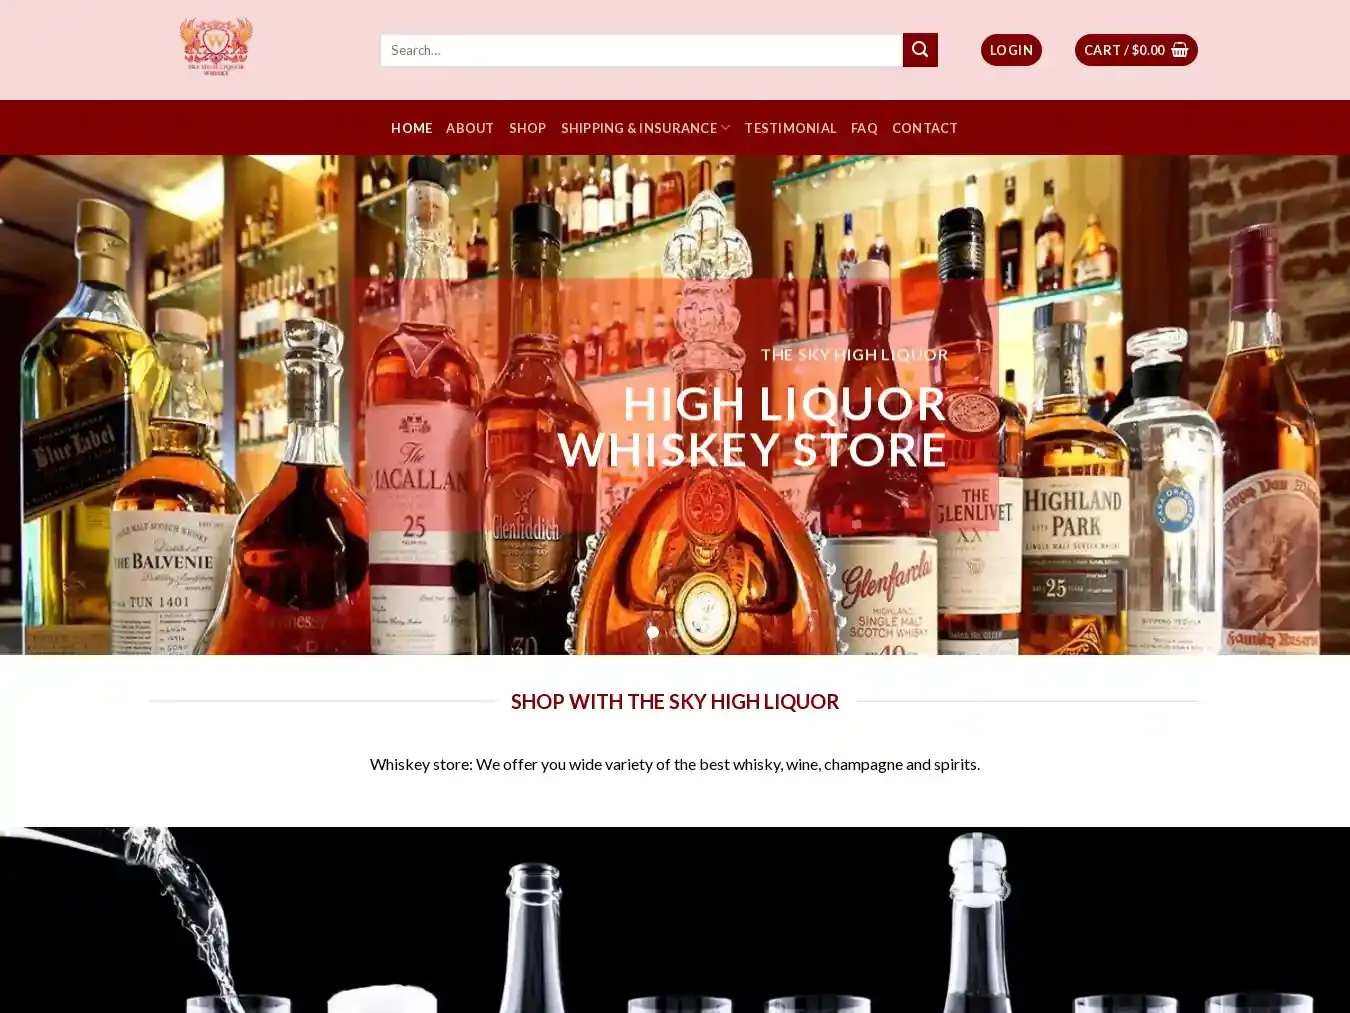 Skyhighliquor.com Fraudulent Whisky website.